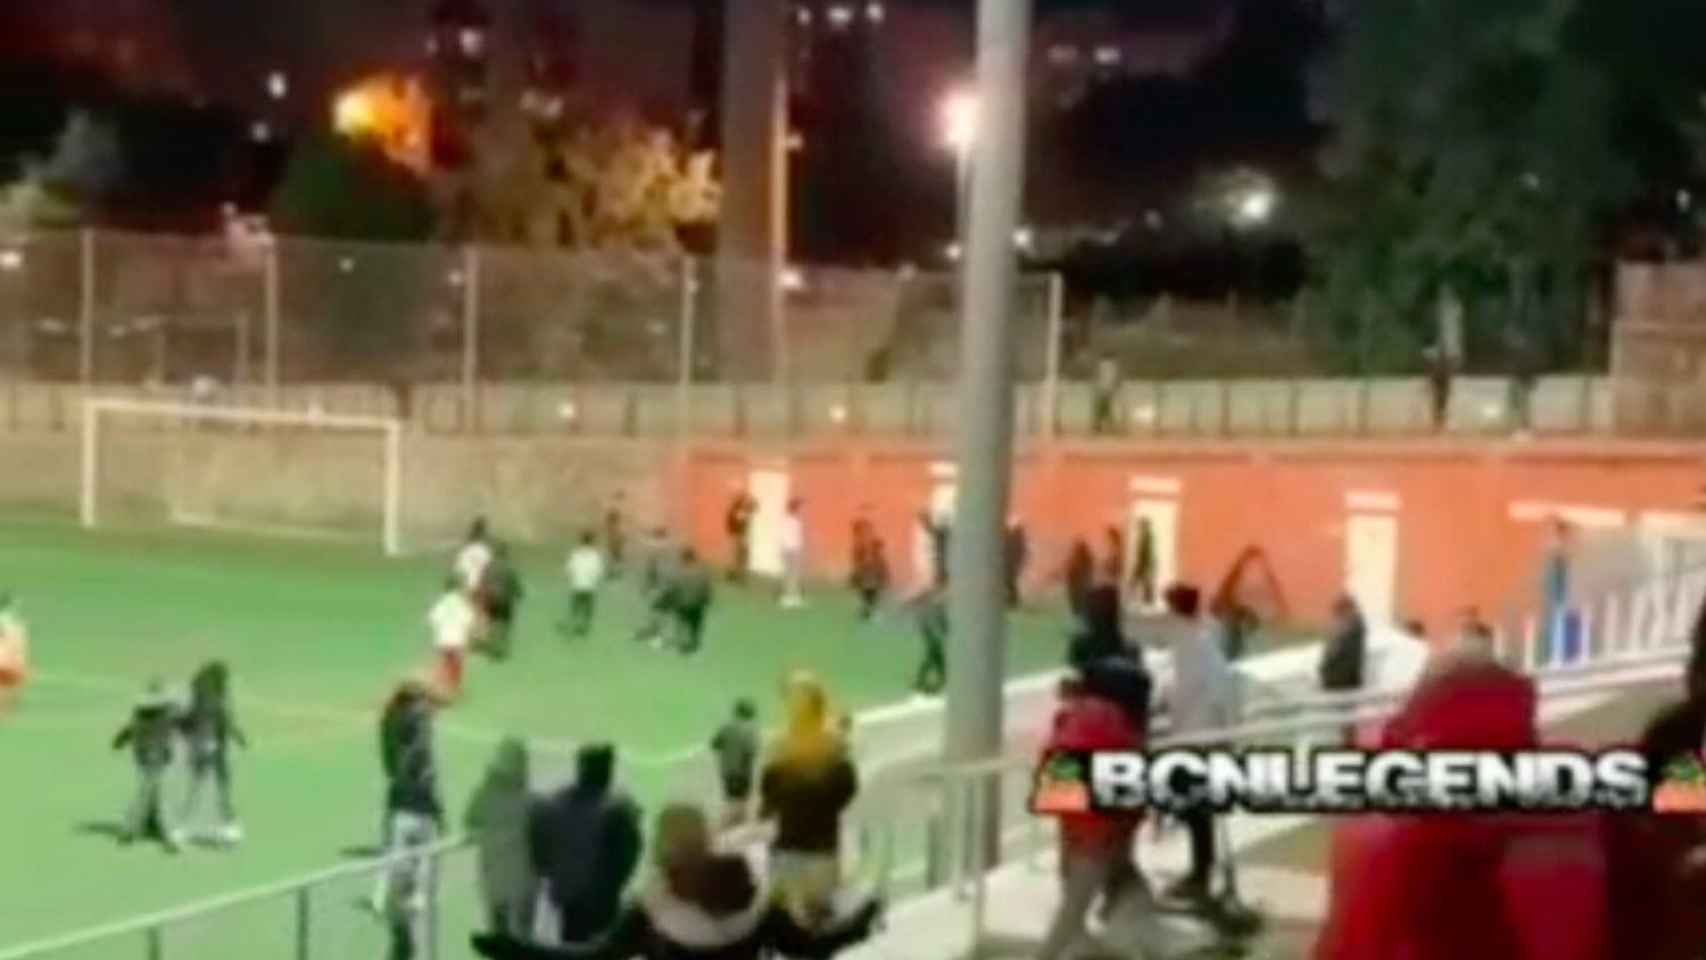 Pelea en un partido de fútbol entre niños en l'Hospitalet / BCN LEGENDS